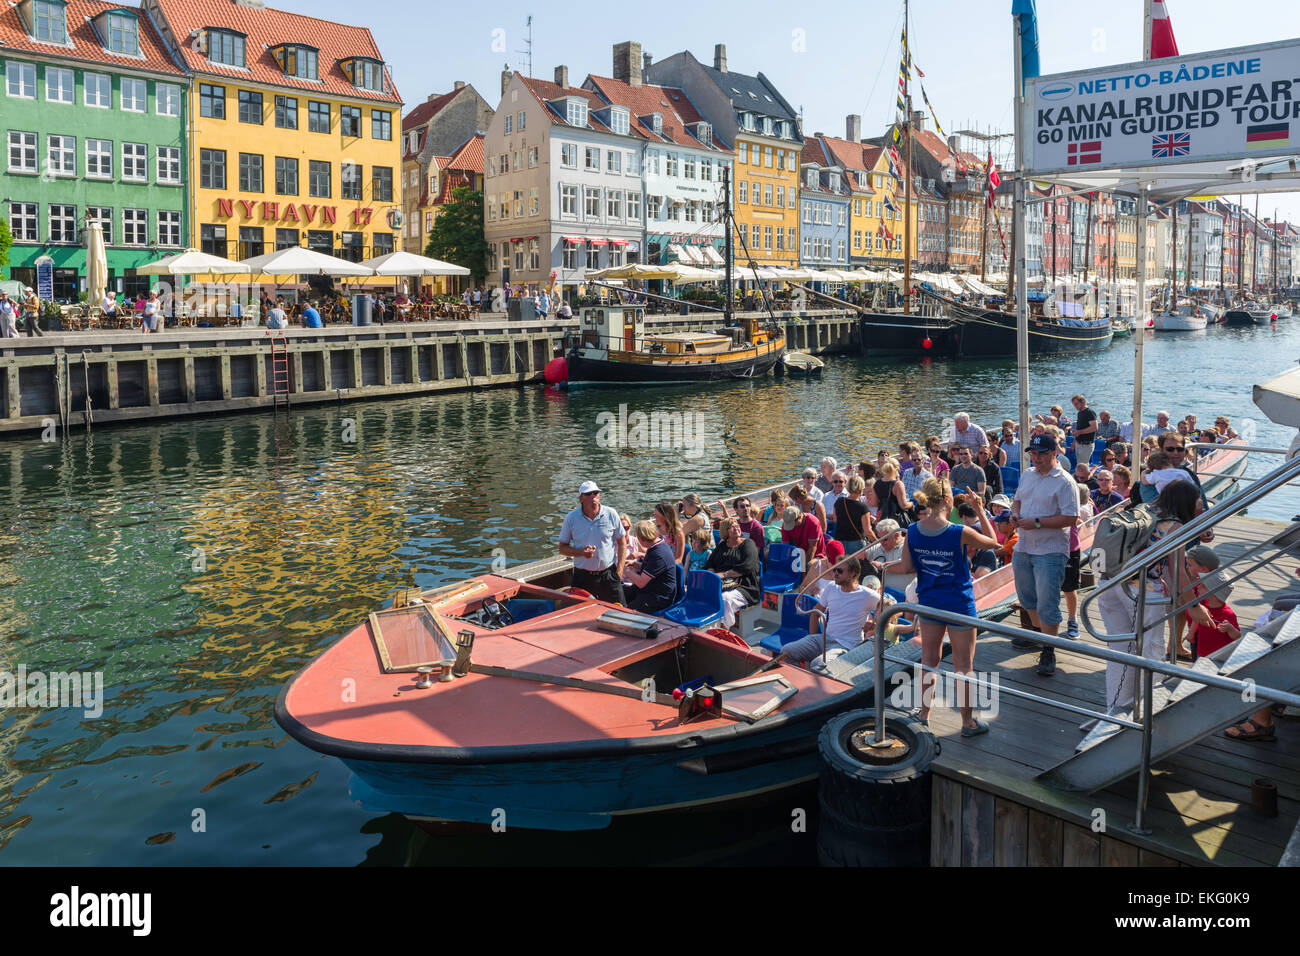 Un canal y una excursión por el puerto de barcos de crucero se prepara para dejar su base en Nyhavn, Copenhague, Dinamarca. Foto de stock